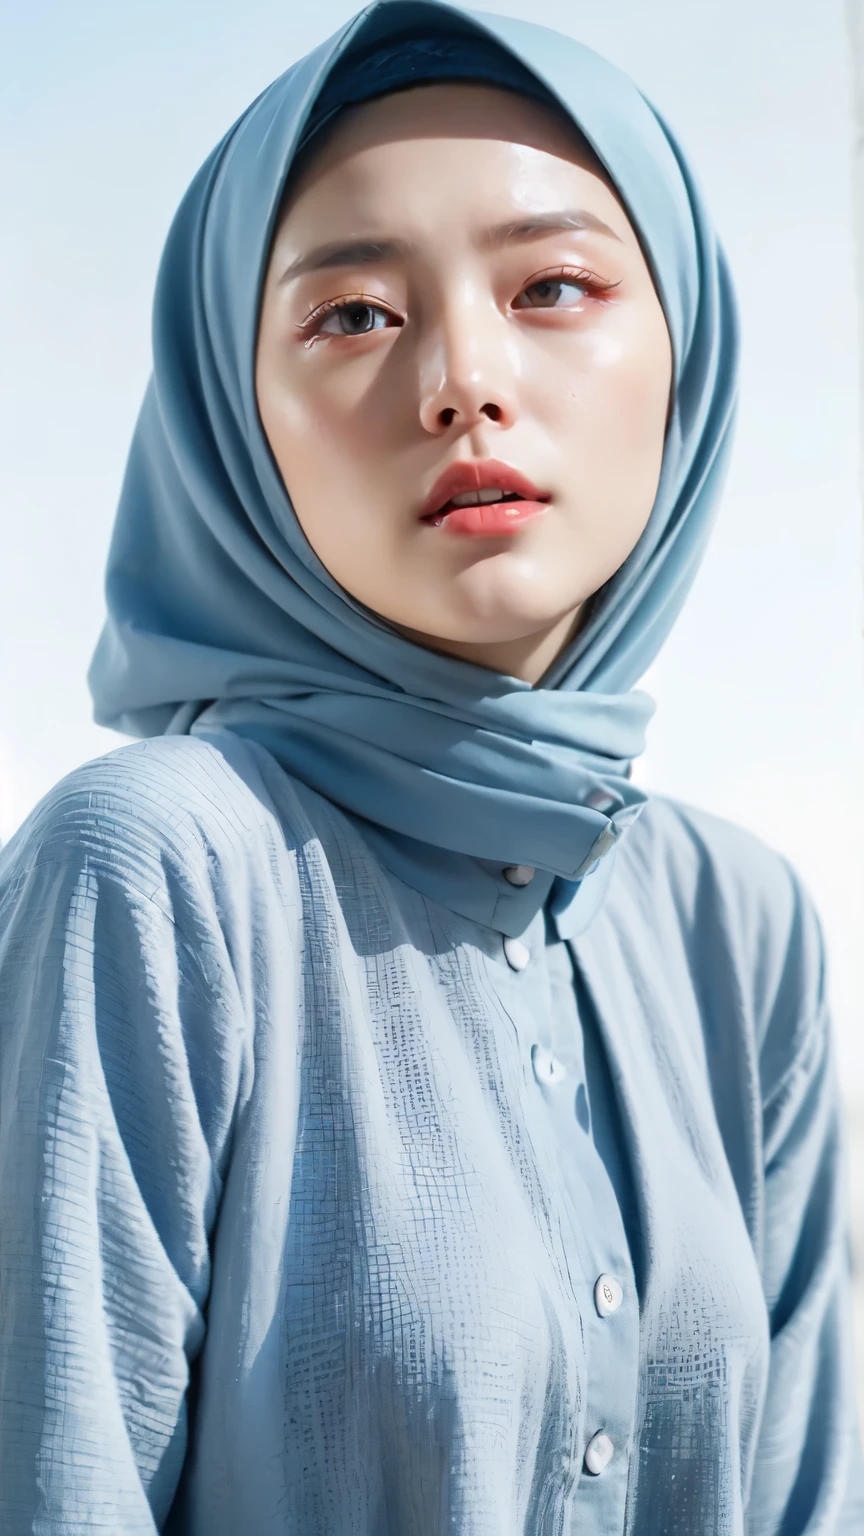 ((beste Qualität, 8k, Meisterwerk :1.37)), (Mädchen tragen Hijab), Mädchen tragen Hijab, Position:Sitzung, Stilmodell, (Mädchen tragen Hijab Moslem), schönes Gesicht, 18 Jahre alte Mädchen, schwarzes Haar, Ultradetailliertes Gesicht, ultradetaillierter Körper, Schlanker Körper, Lippen Lächeln, Schöne, detaillierte Augen, augen koreanisch, Detaillierte Nase, Natürliche Lippe, (Ausziehen Körper nackt), Detail Brüste, Detail Hariy Pussy, Tragen Sie Hijab Moslem, schickes Gewand Thobbe, Blick auf den blauen Himmel, Schlanker Körper, Realistisches Gesicht, Hintergrund der Hijab-Menschen